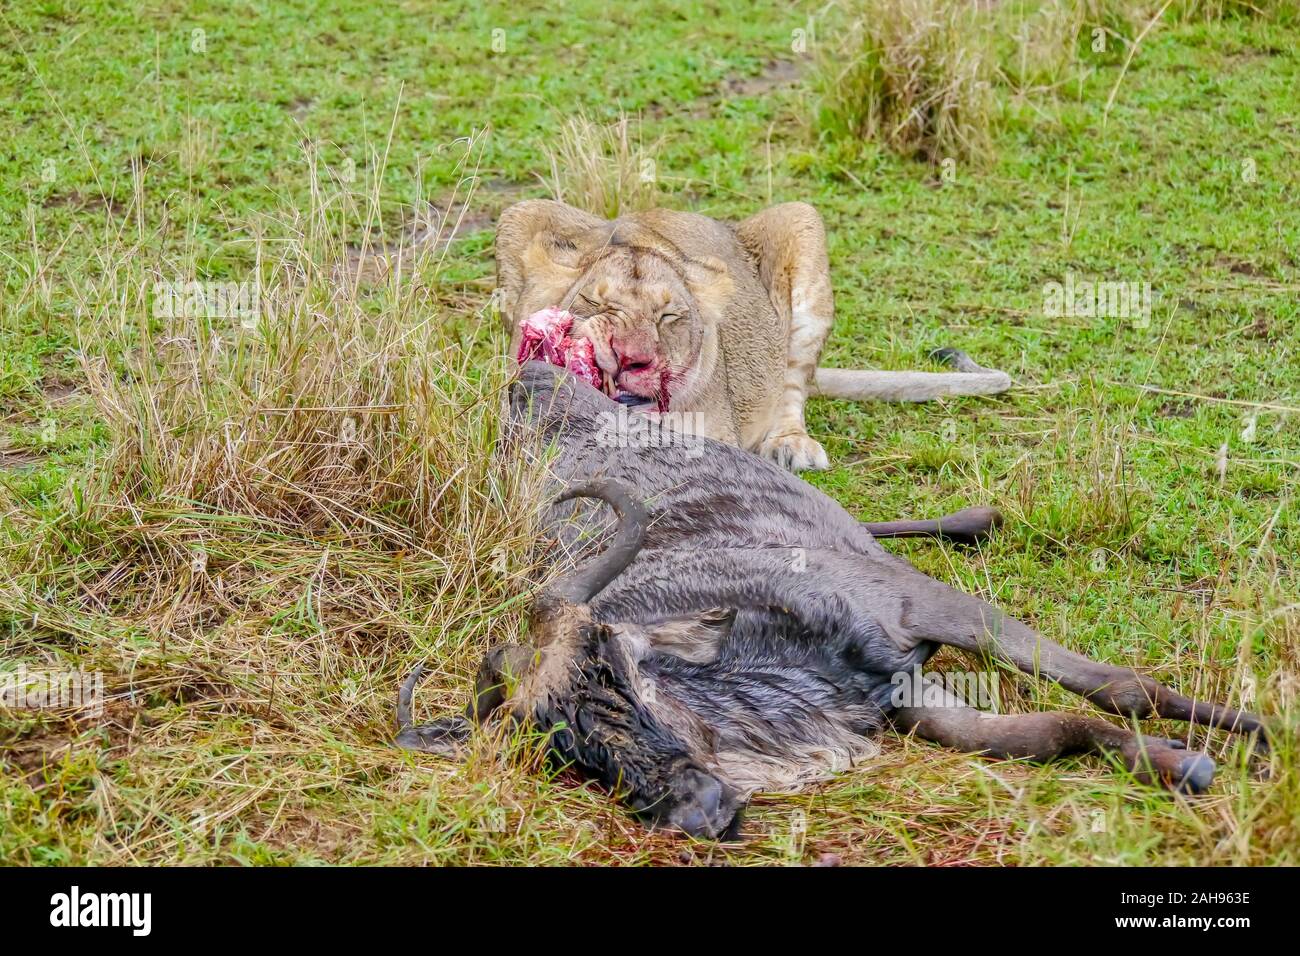 Eine afrikanische Safari Szene mit einem erwachsenen Löwin kauen das Fleisch eines Gnus Sie gerade während der jährlichen großen Migration in der Masai getötet hat. Stockfoto